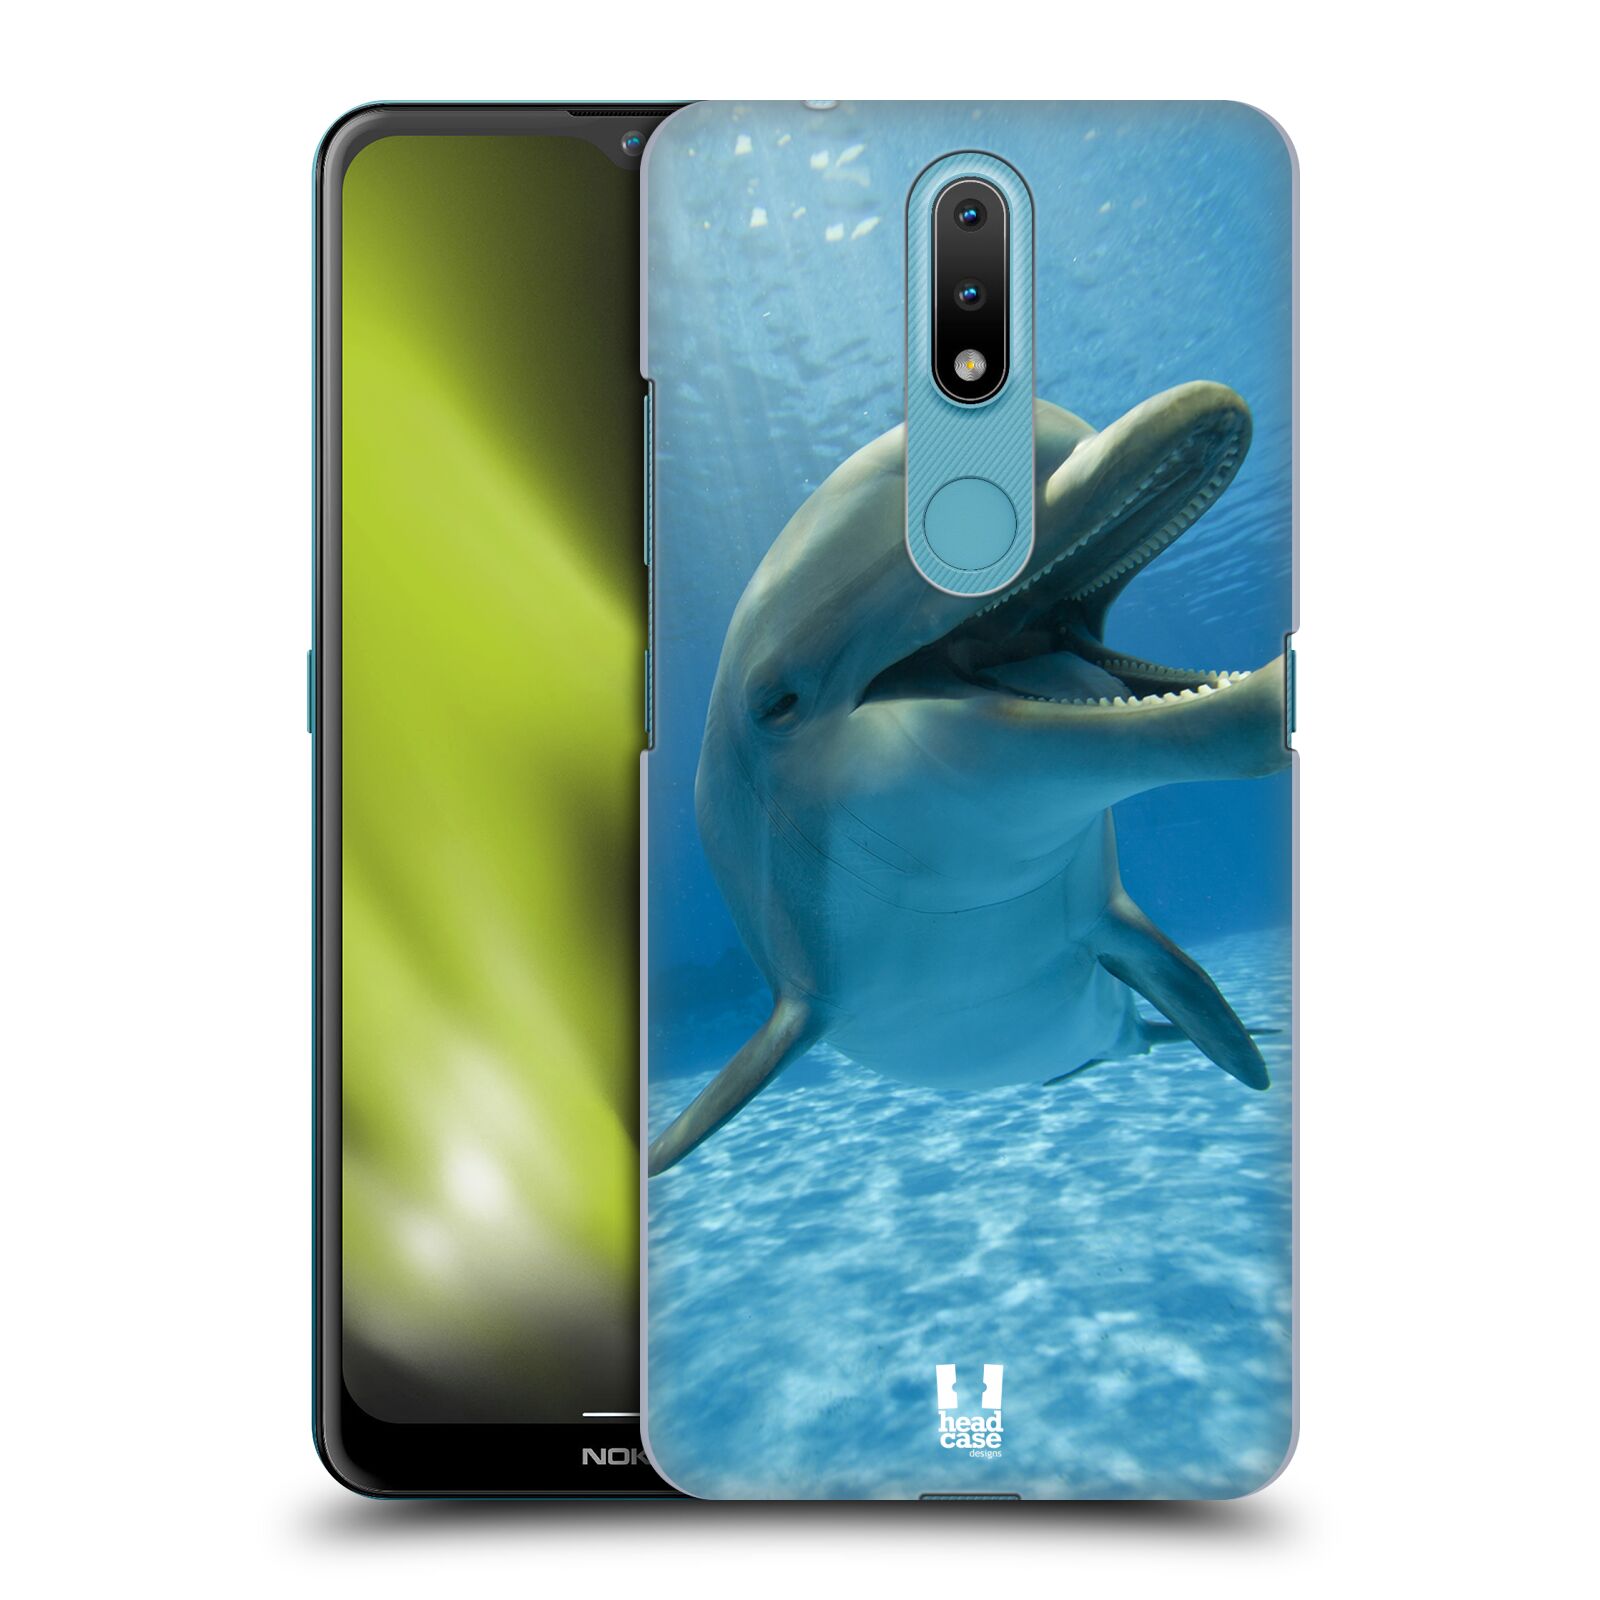 Zadní obal pro mobil Nokia 2.4 - HEAD CASE - Svět zvířat delfín v moři